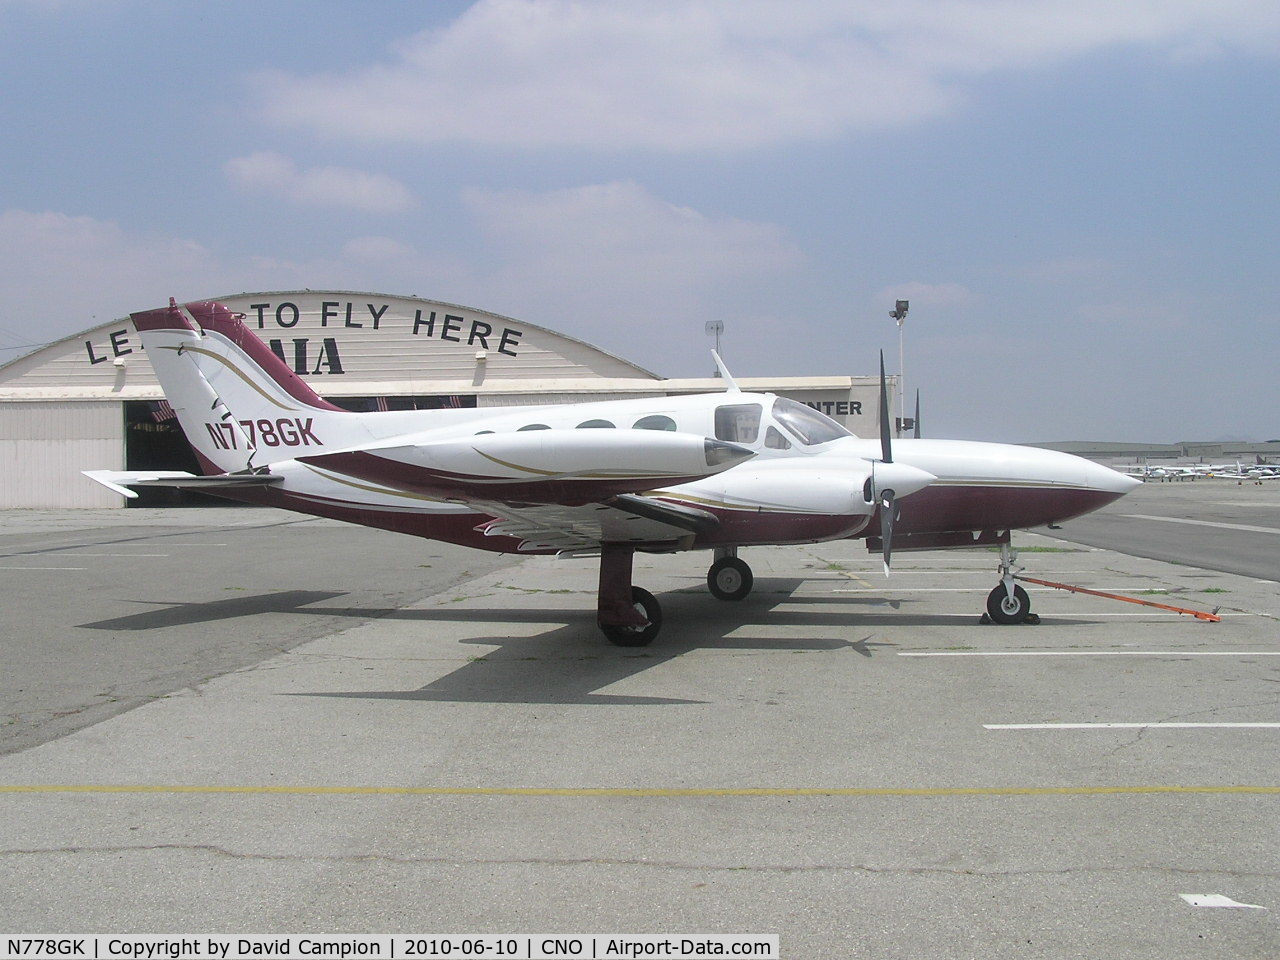 N778GK, 1971 Cessna 421B Golden Eagle C/N 421B0118, At Chino, CA